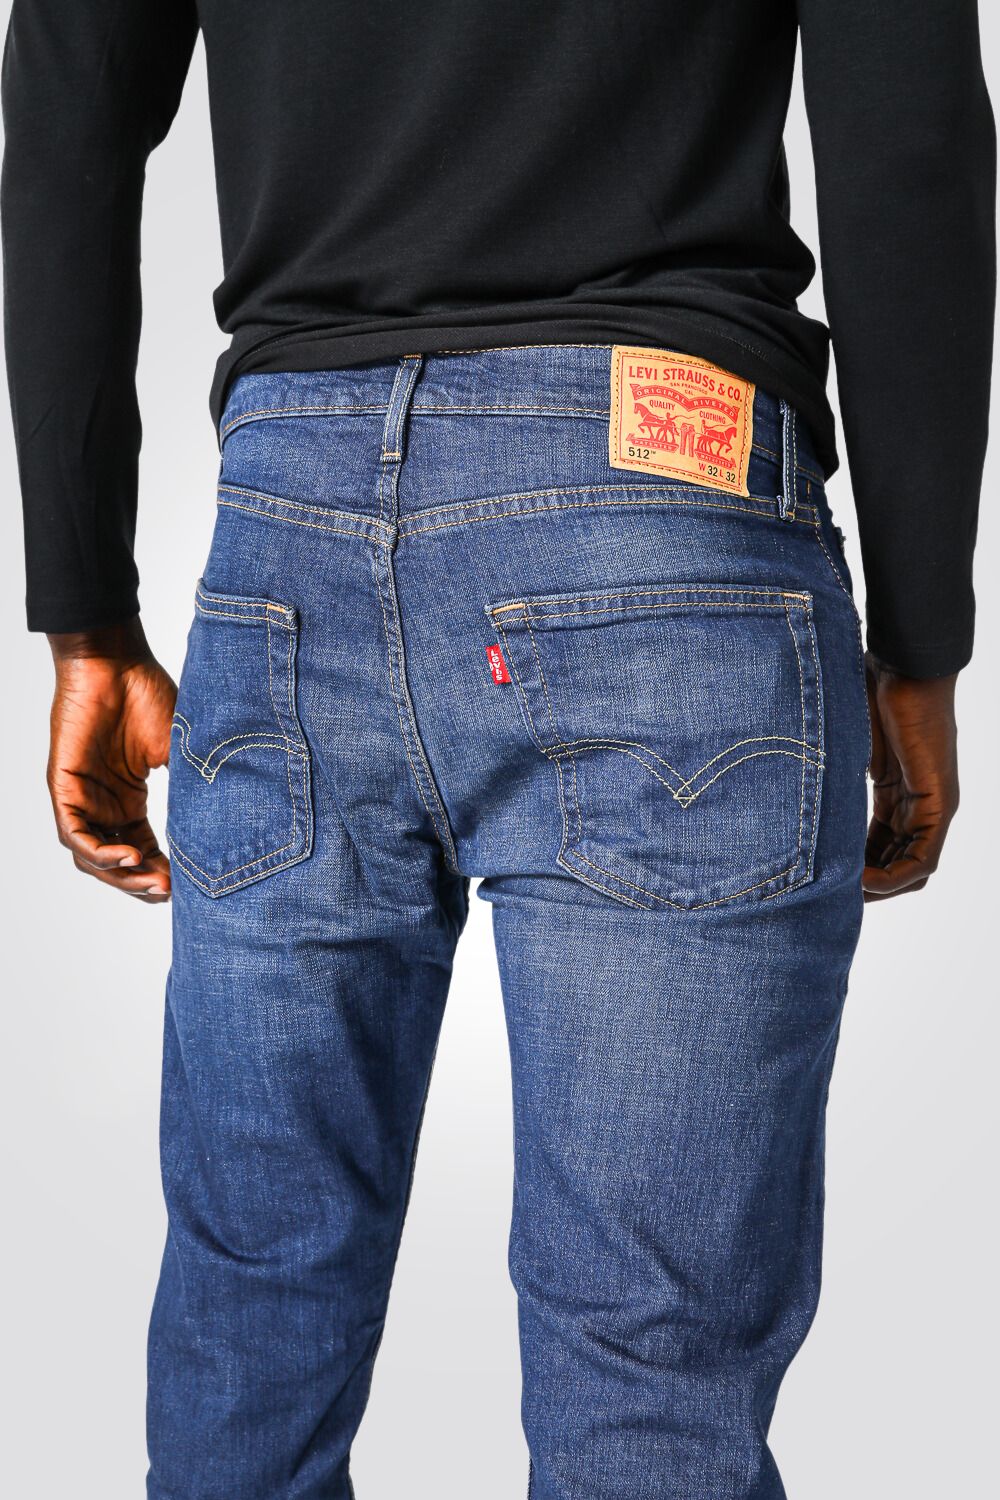 ג'ינס לגברים INDIGO-POCKETS בצבע כחול בהיר